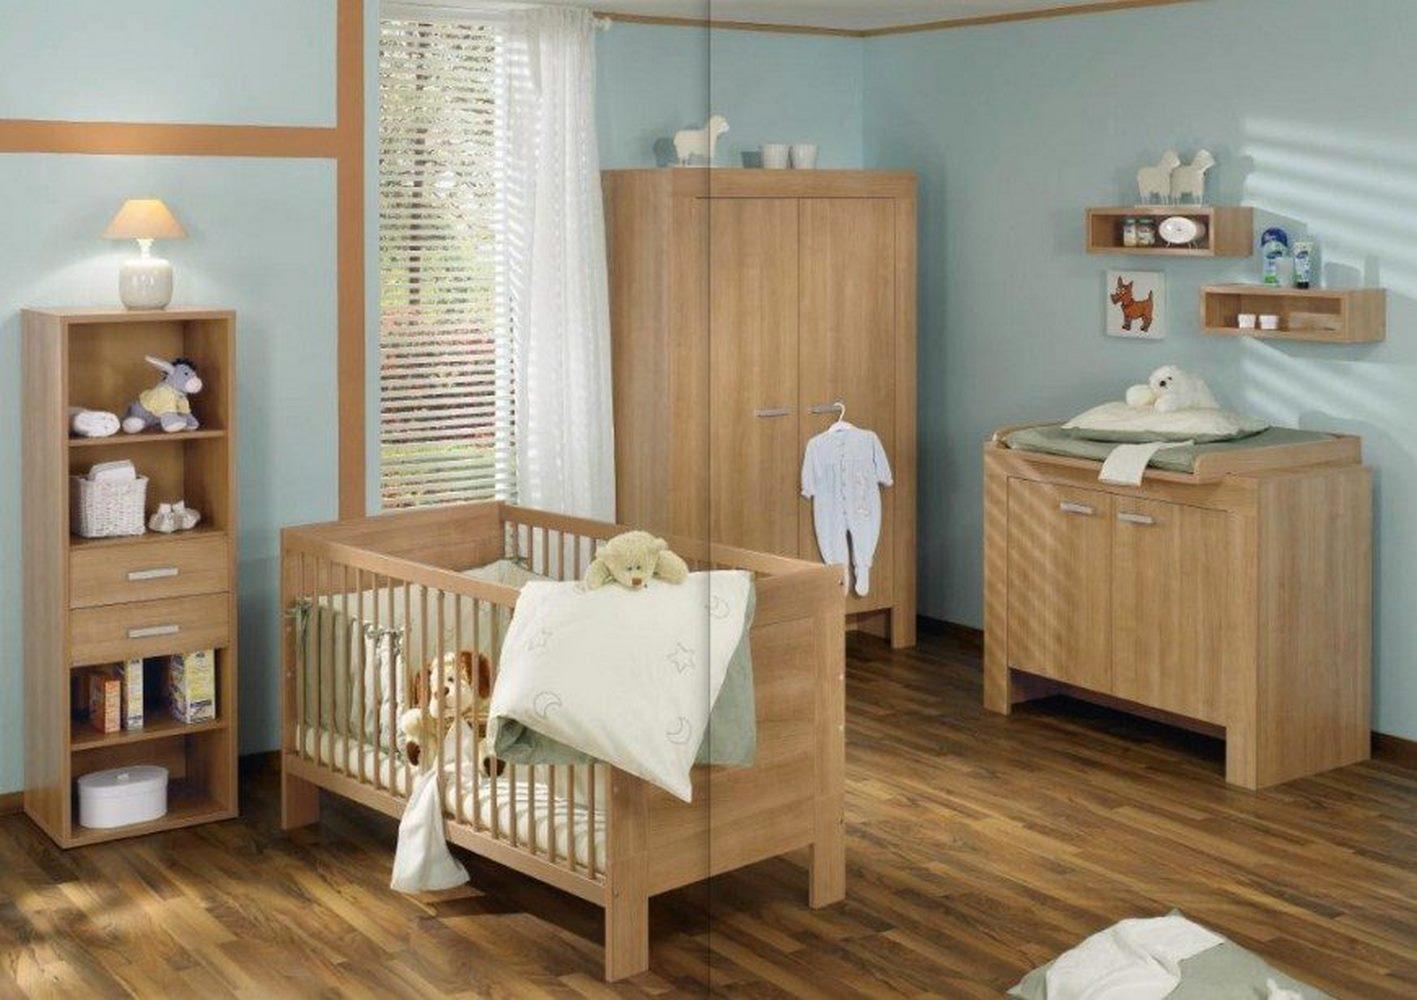 Комната для новорожденного: дизайн интерьера, 63 фото-идеи оформления